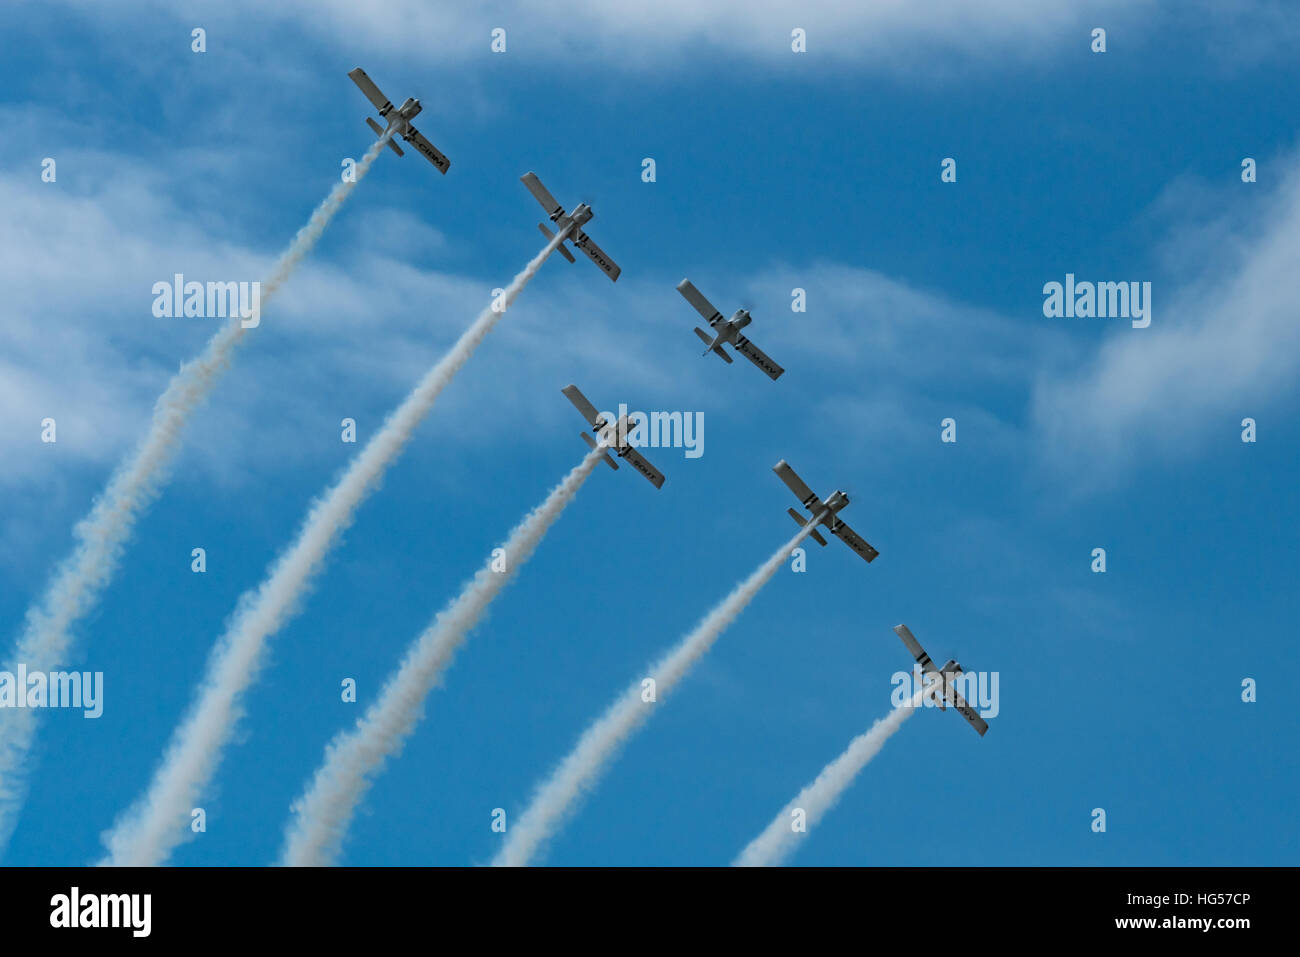 Team Raven Display Team Höchstleistungen der 2016 Rhyl Air Show Stockfoto